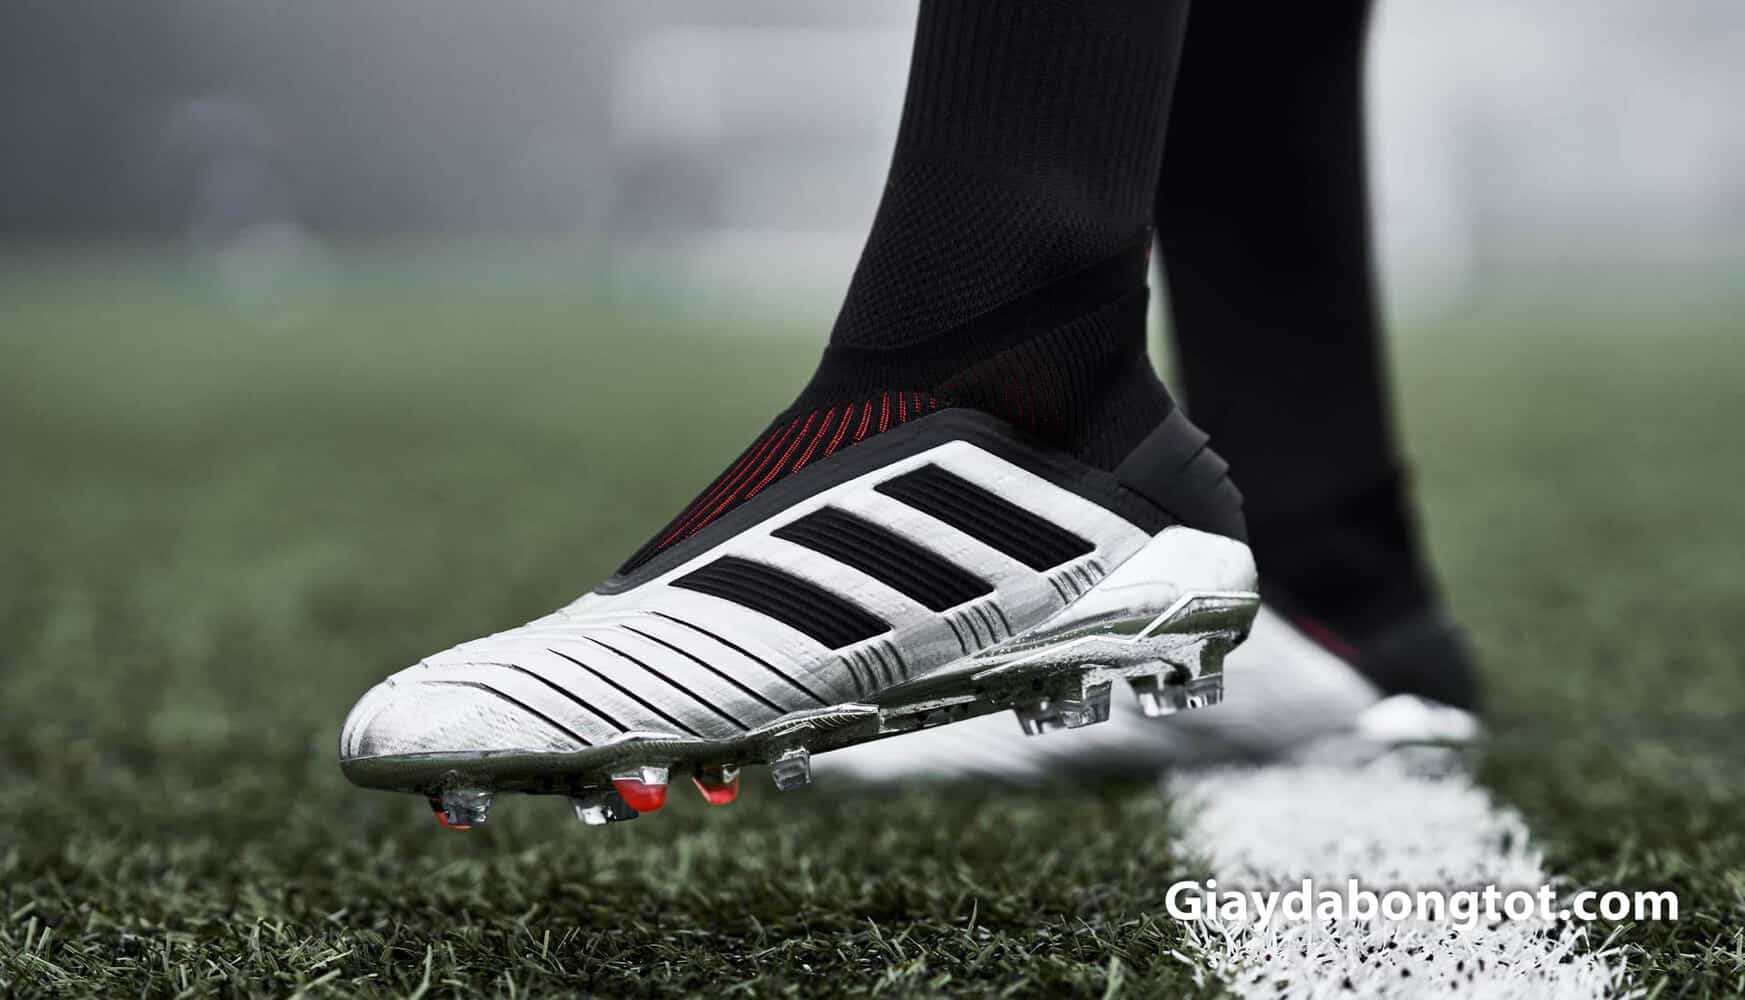 Paul Pogba sử dụng giày đá bóng Adidas Predator 19+ để chơi bóng